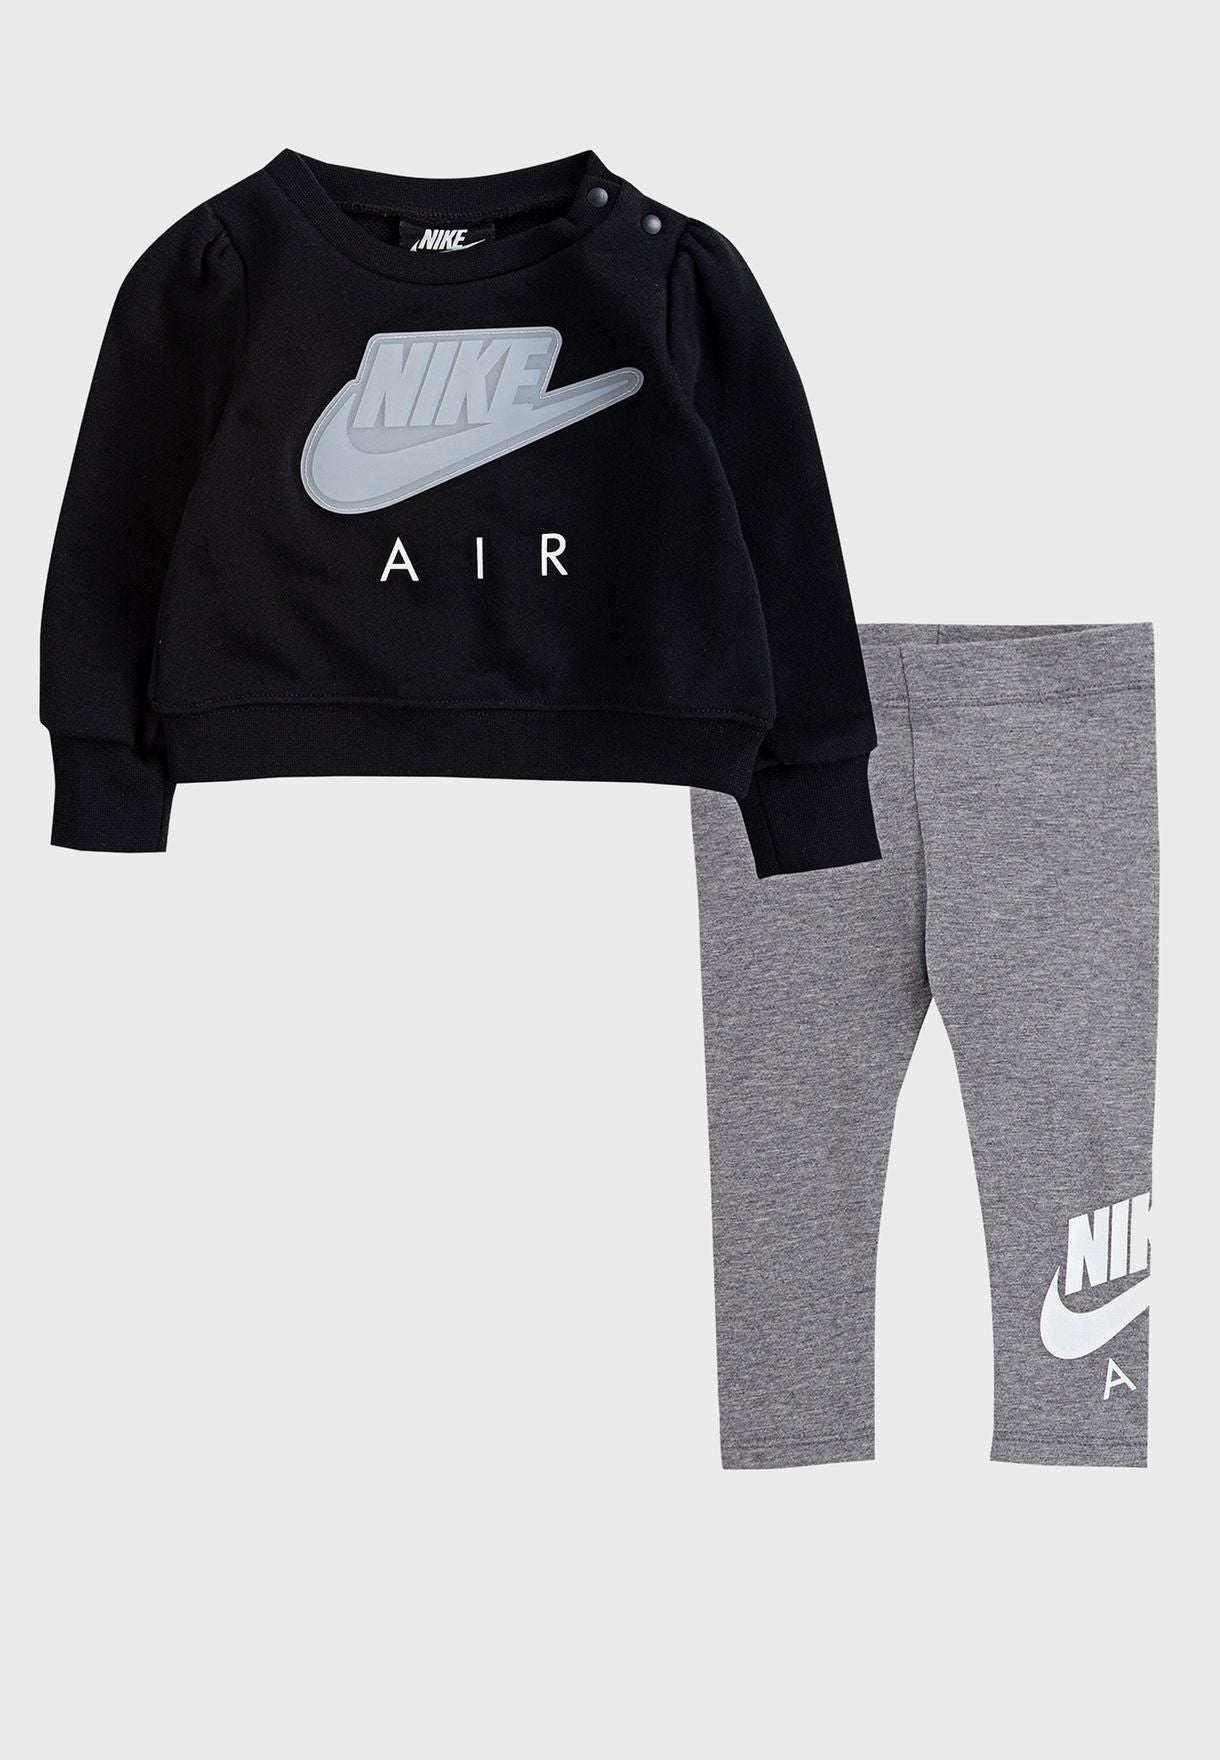 Nike Sportswear Kinder-Set aus Sweatshirt und Hose für Mädchen – Schwarz/Grau